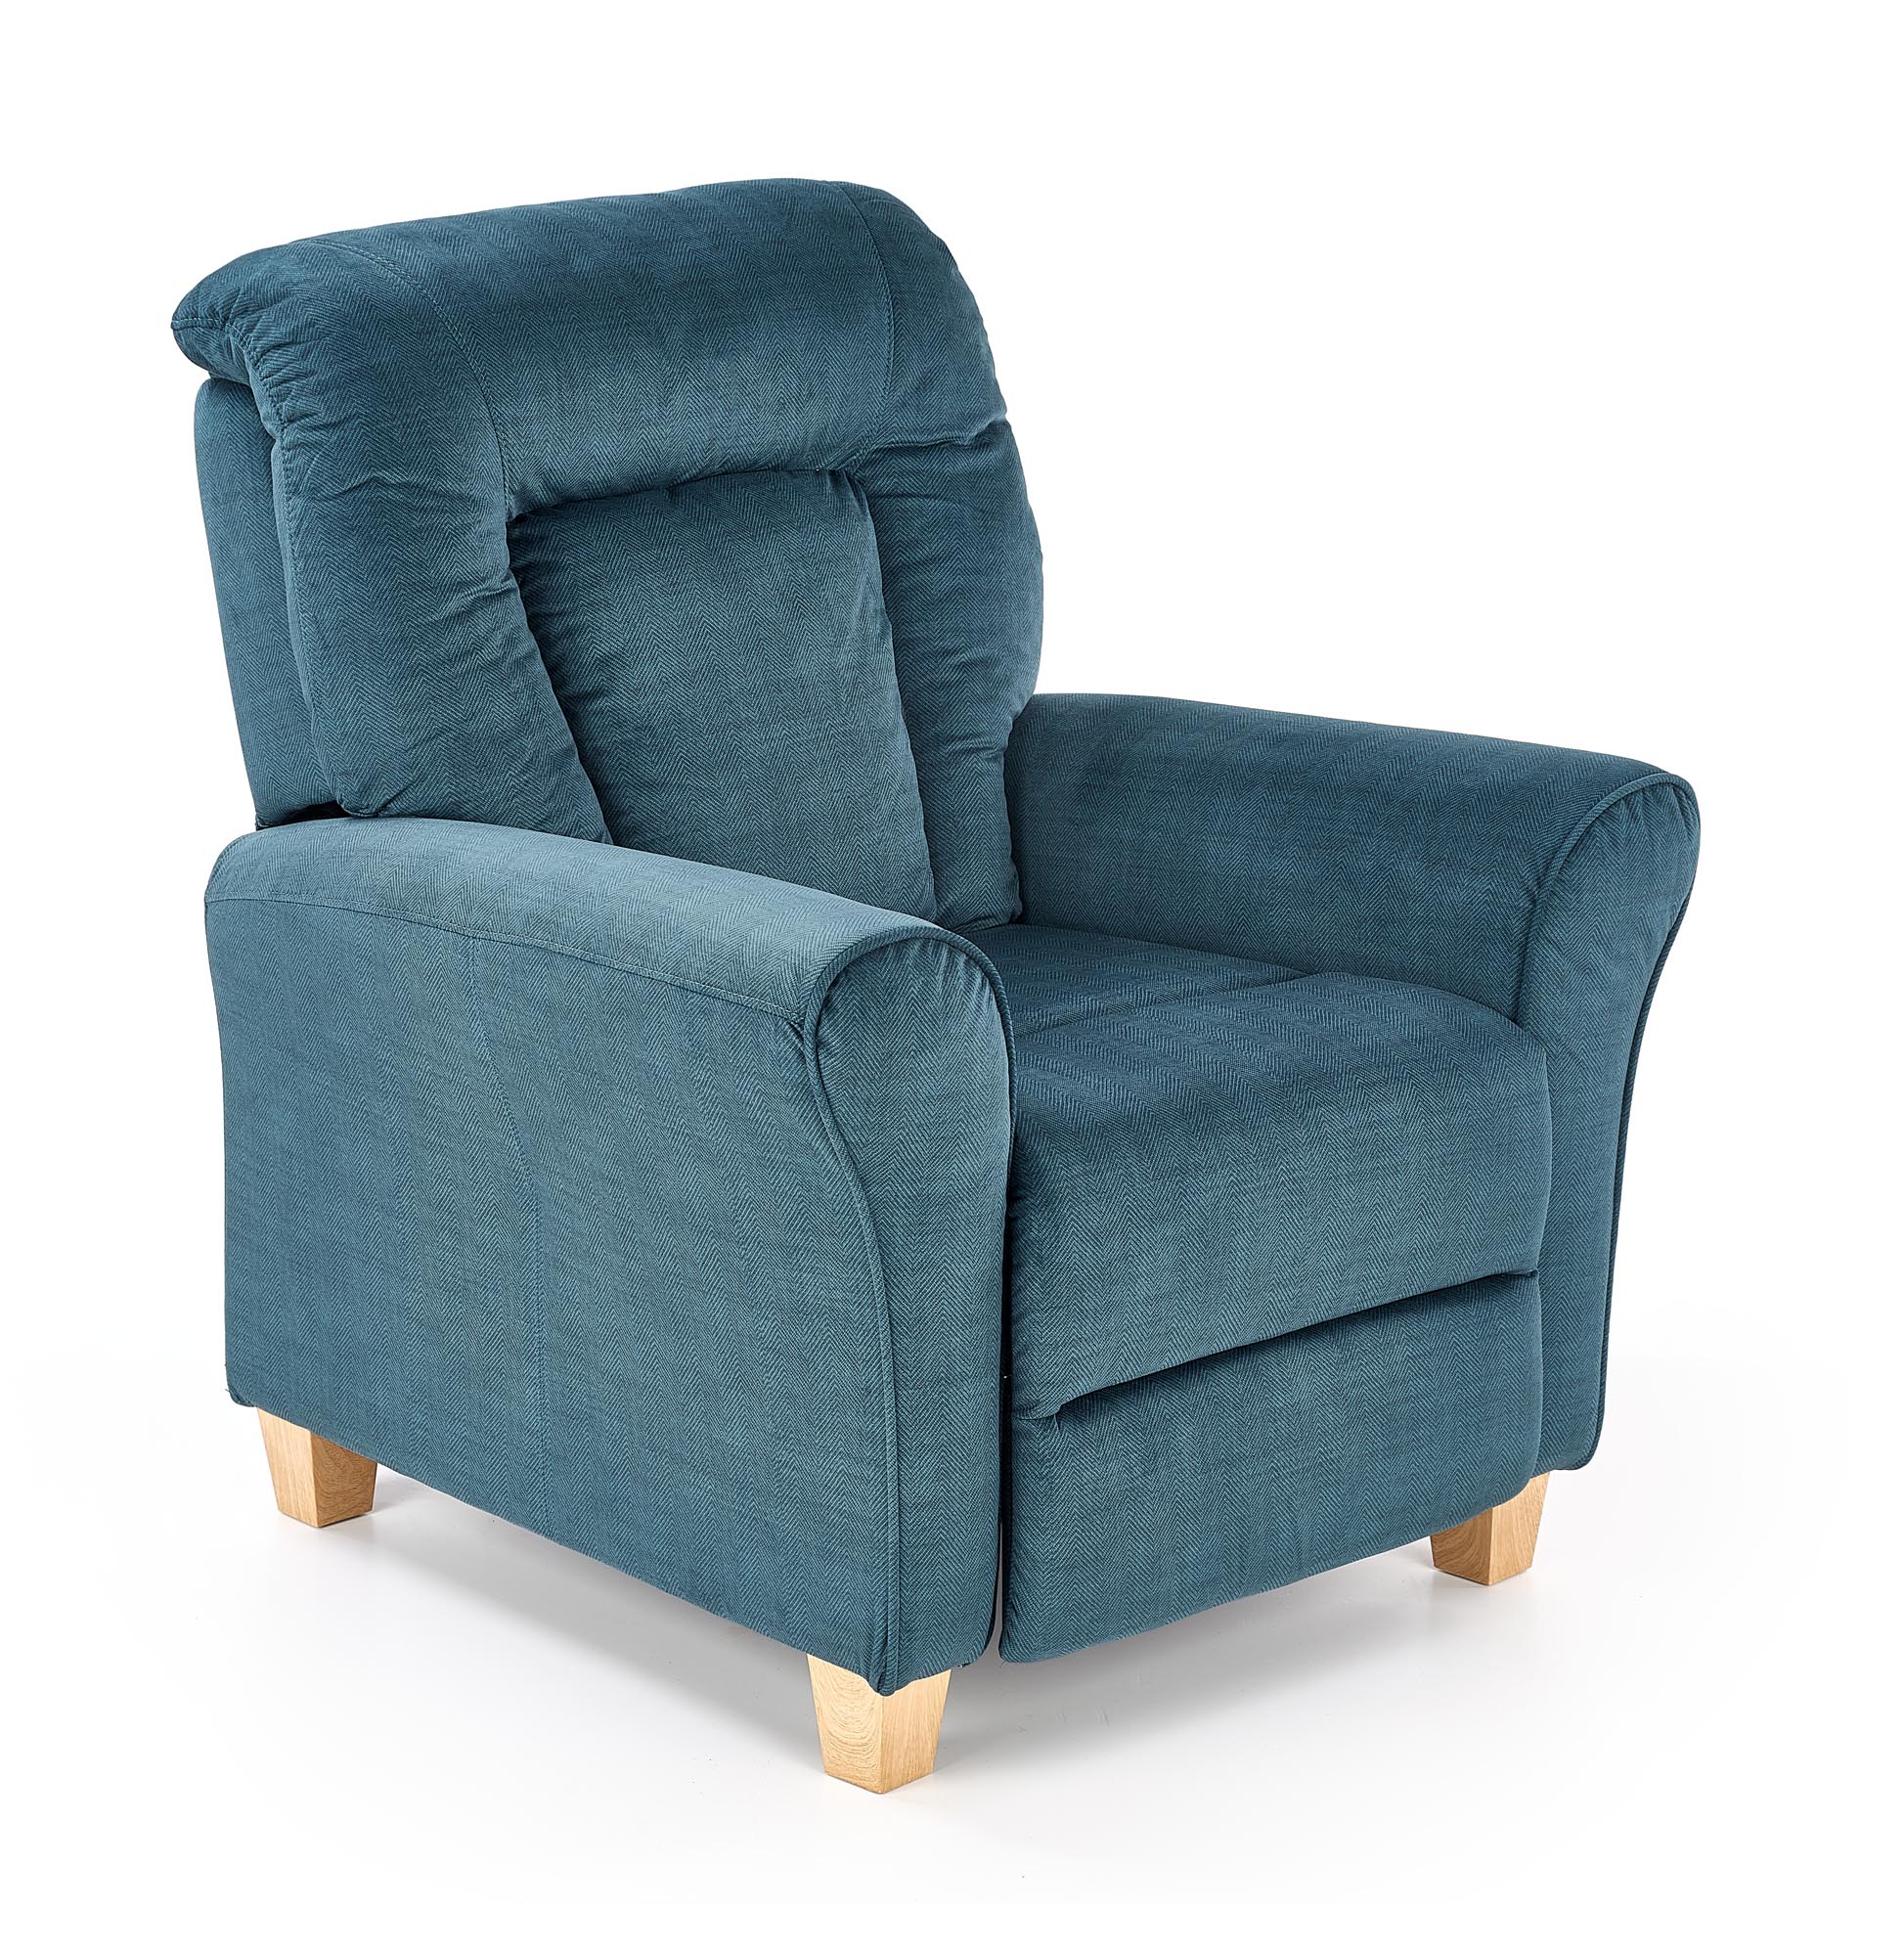 BARD fotel wypoczynkowy ciemny niebieski bard fotel wypoczynkowy ciemny niebieski